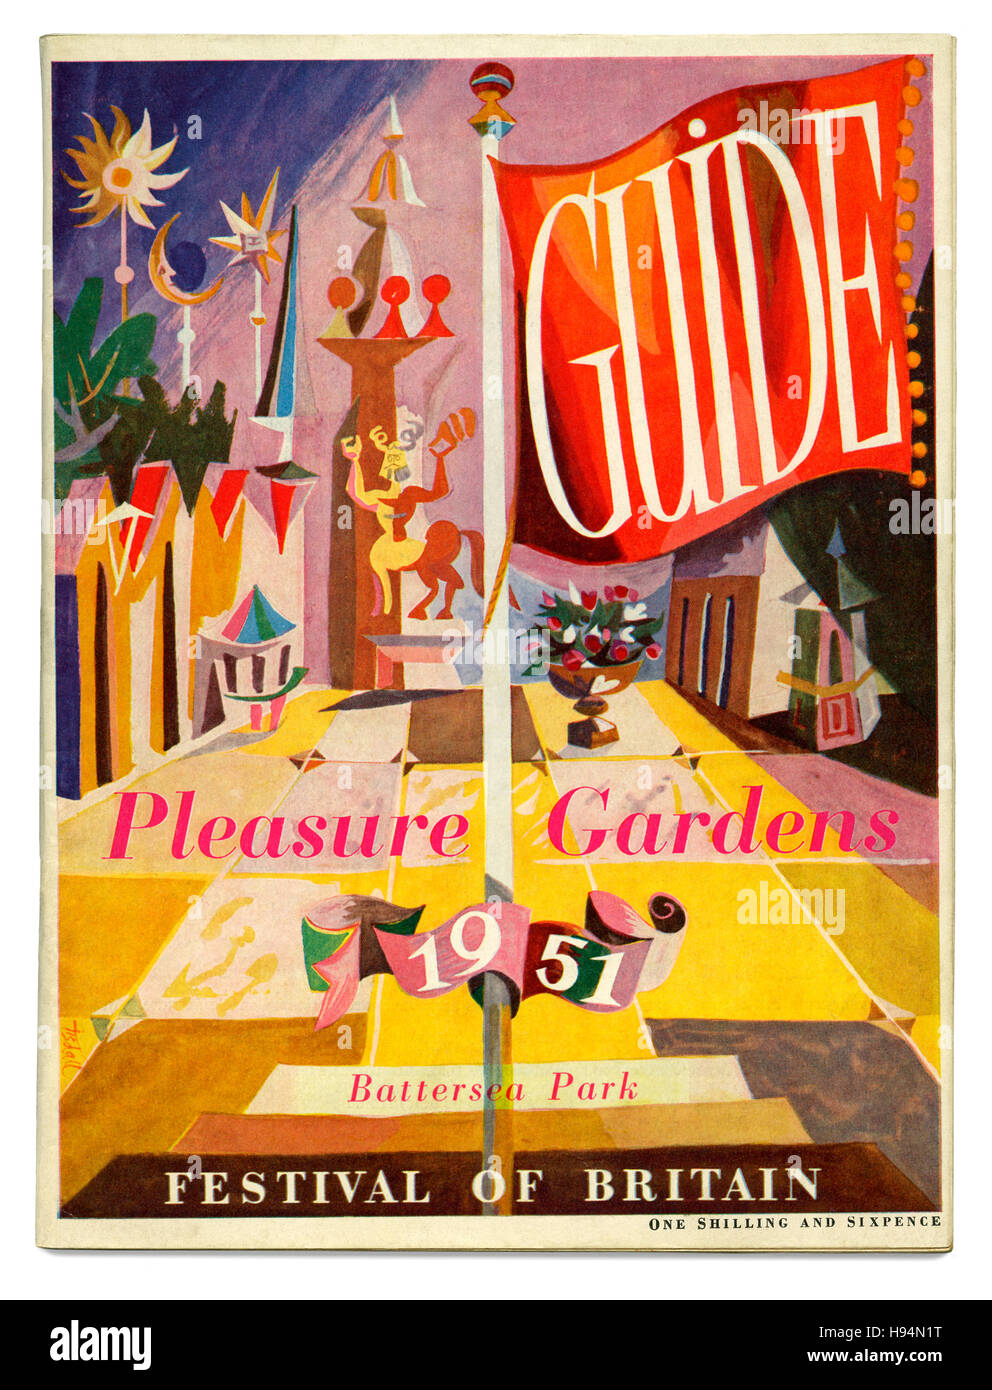 Abdeckung für das Festival von Großbritannien Lustgärten Guide, Battersea Park, London, 1951 Stockfoto